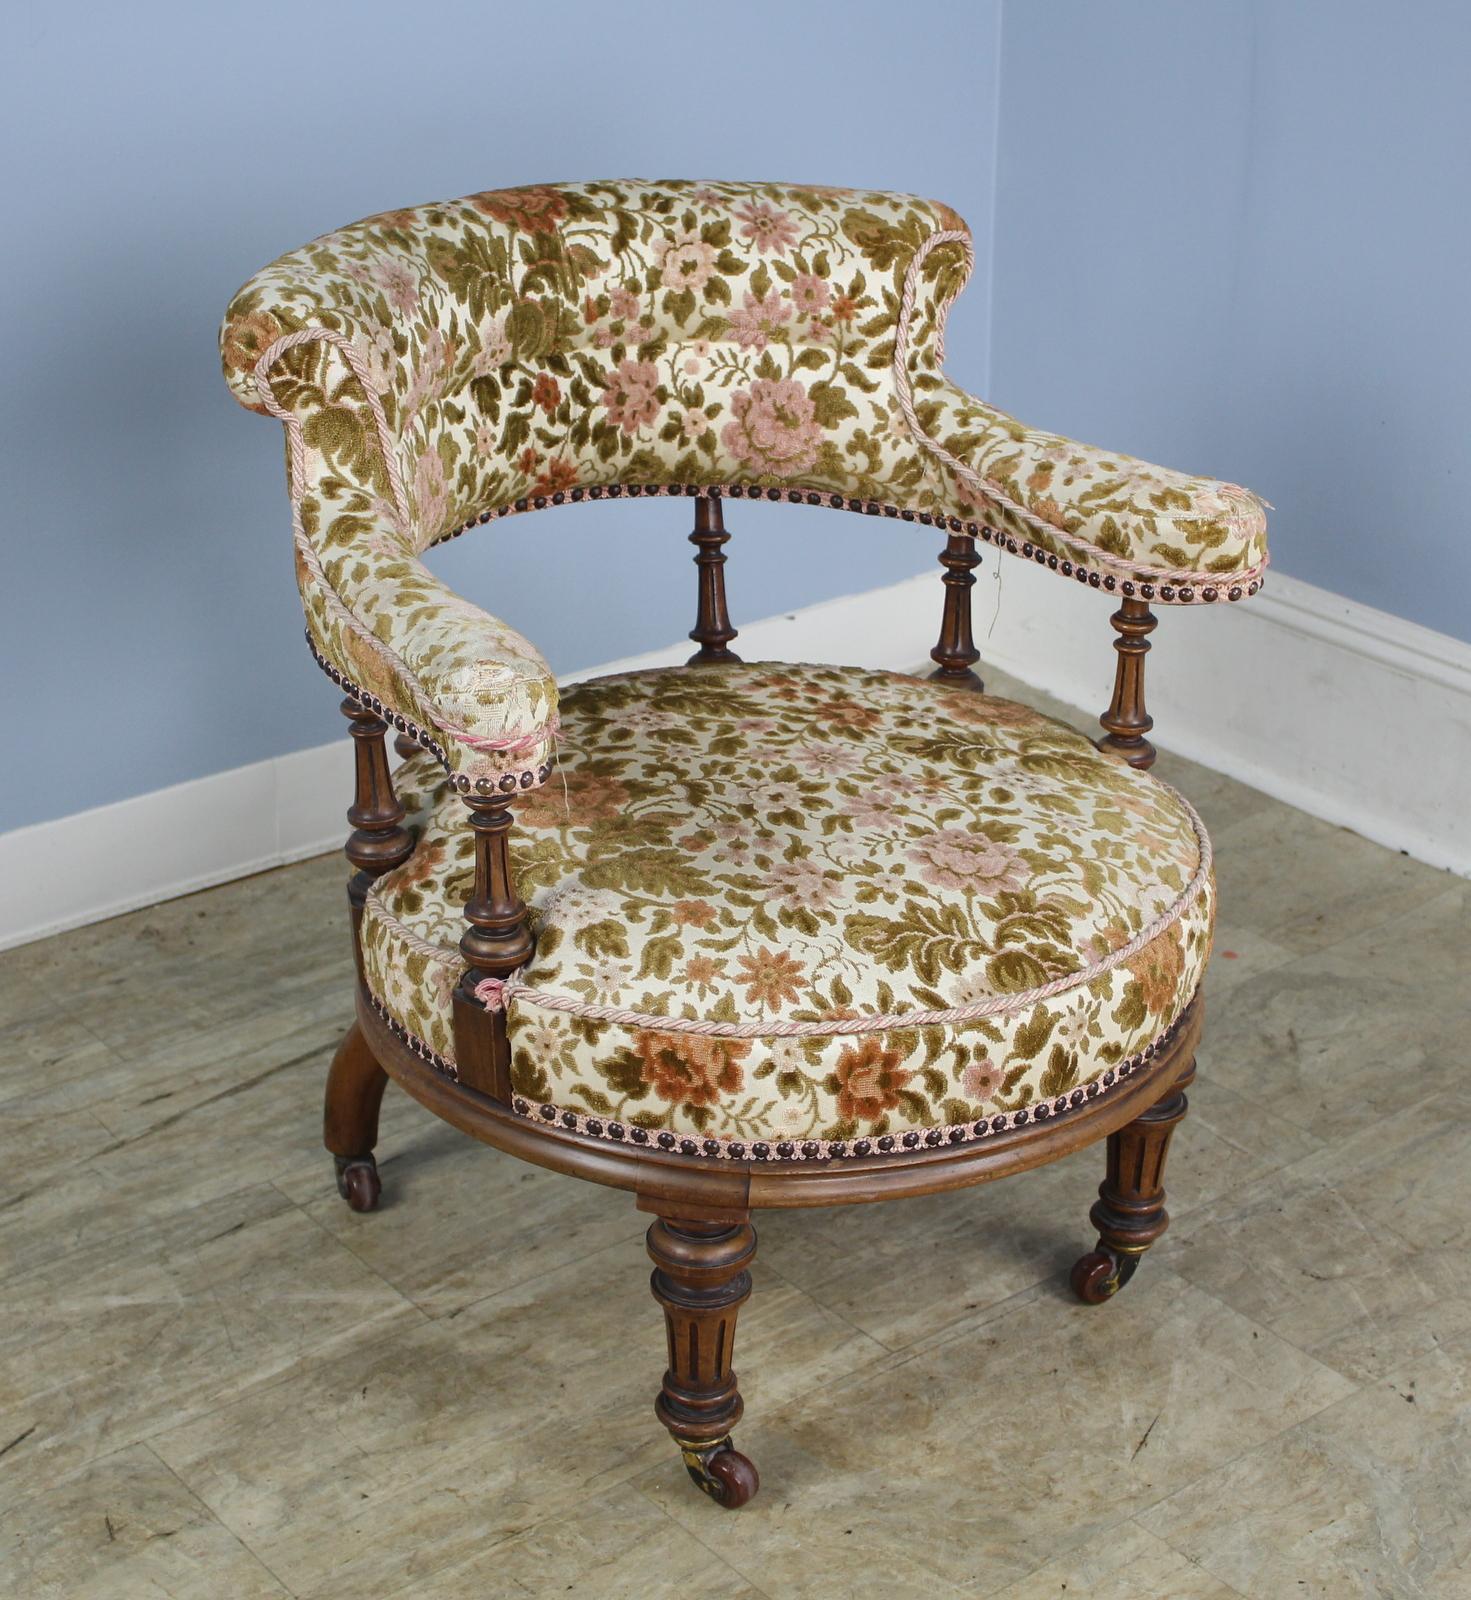 Hübscher kleiner Sessel aus dem 19. Jahrhundert mit charmanten gedrechselten Beinen. Original-Rollen. Die florale Polsterung ist abgenutzt. Das Stück ist bereit für eine Neupolsterung.